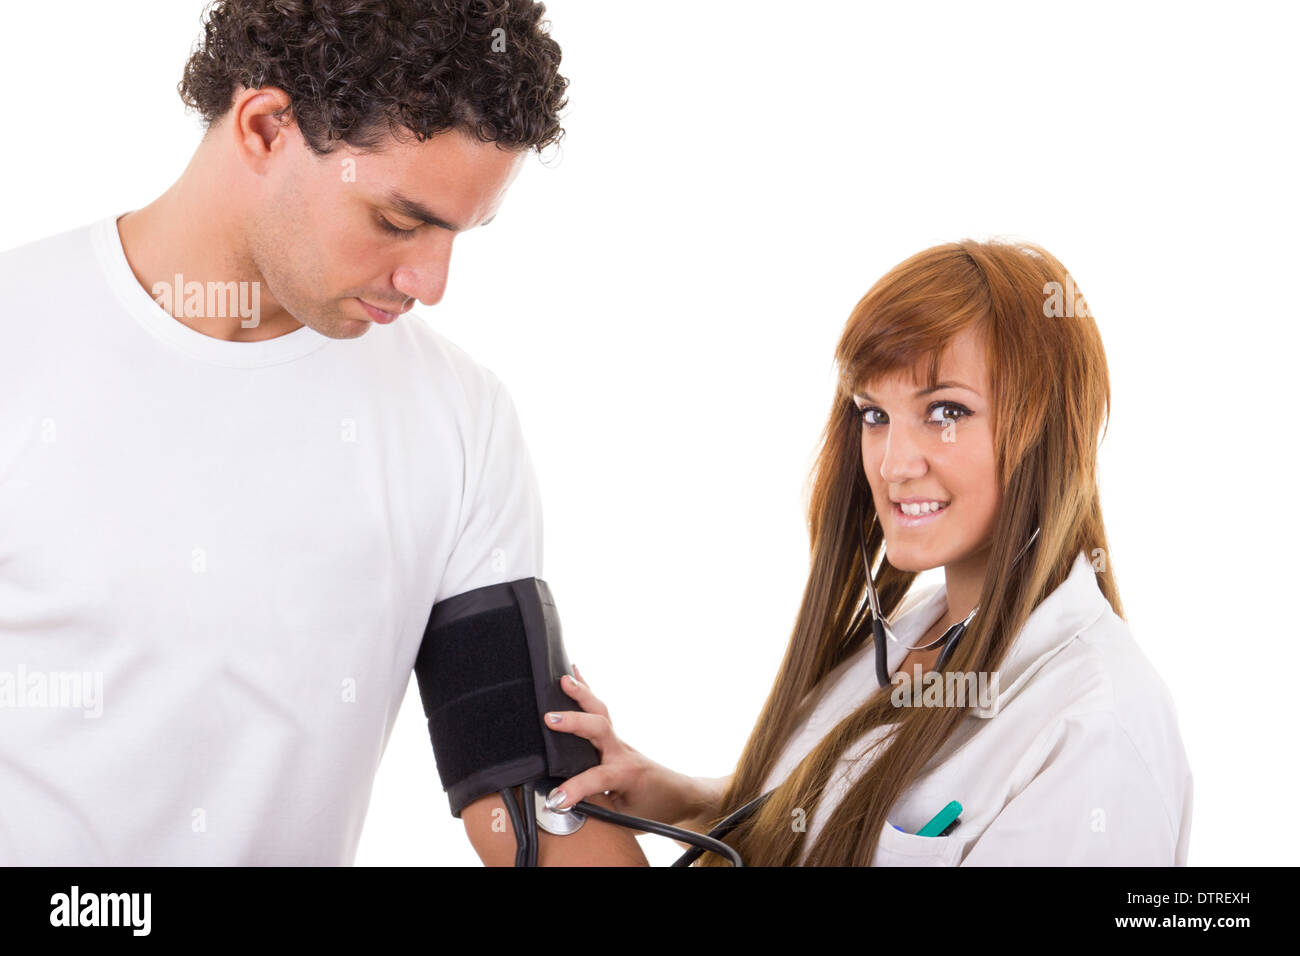 Infermiera professionale o medico misura la pressione sanguigna di un paziente Foto Stock